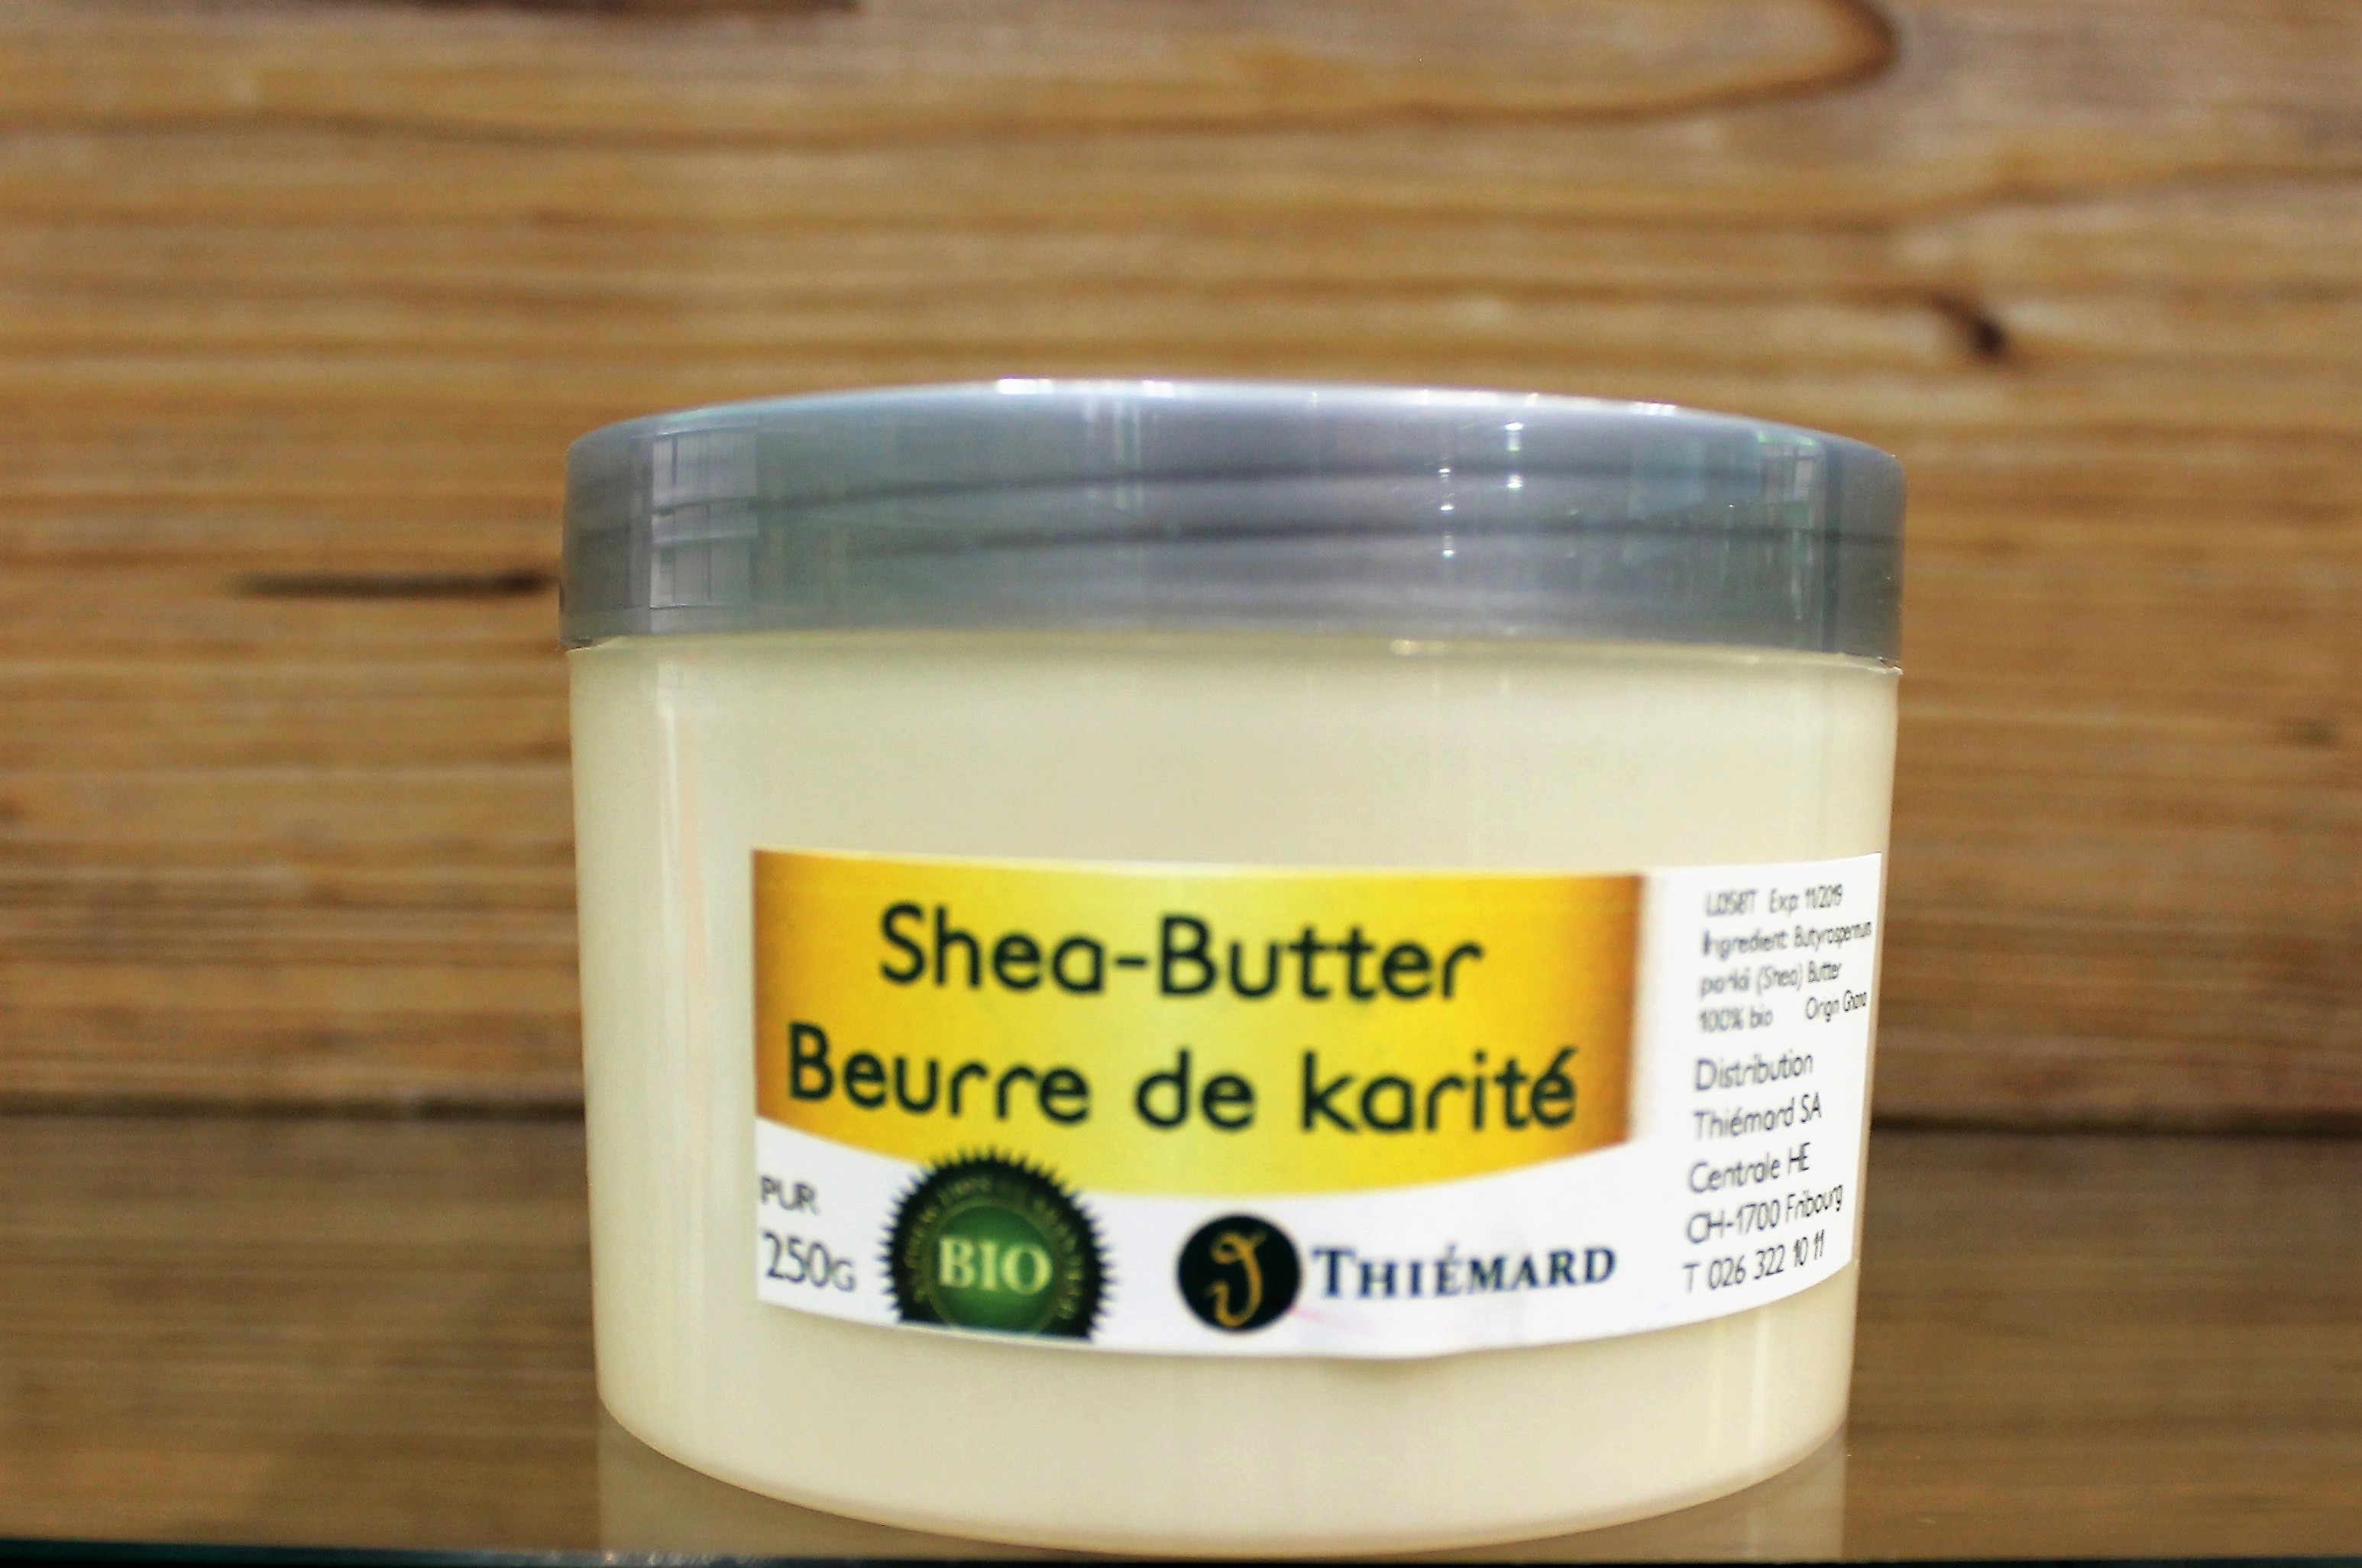 Shea-Butter pur 100% Bio 250g